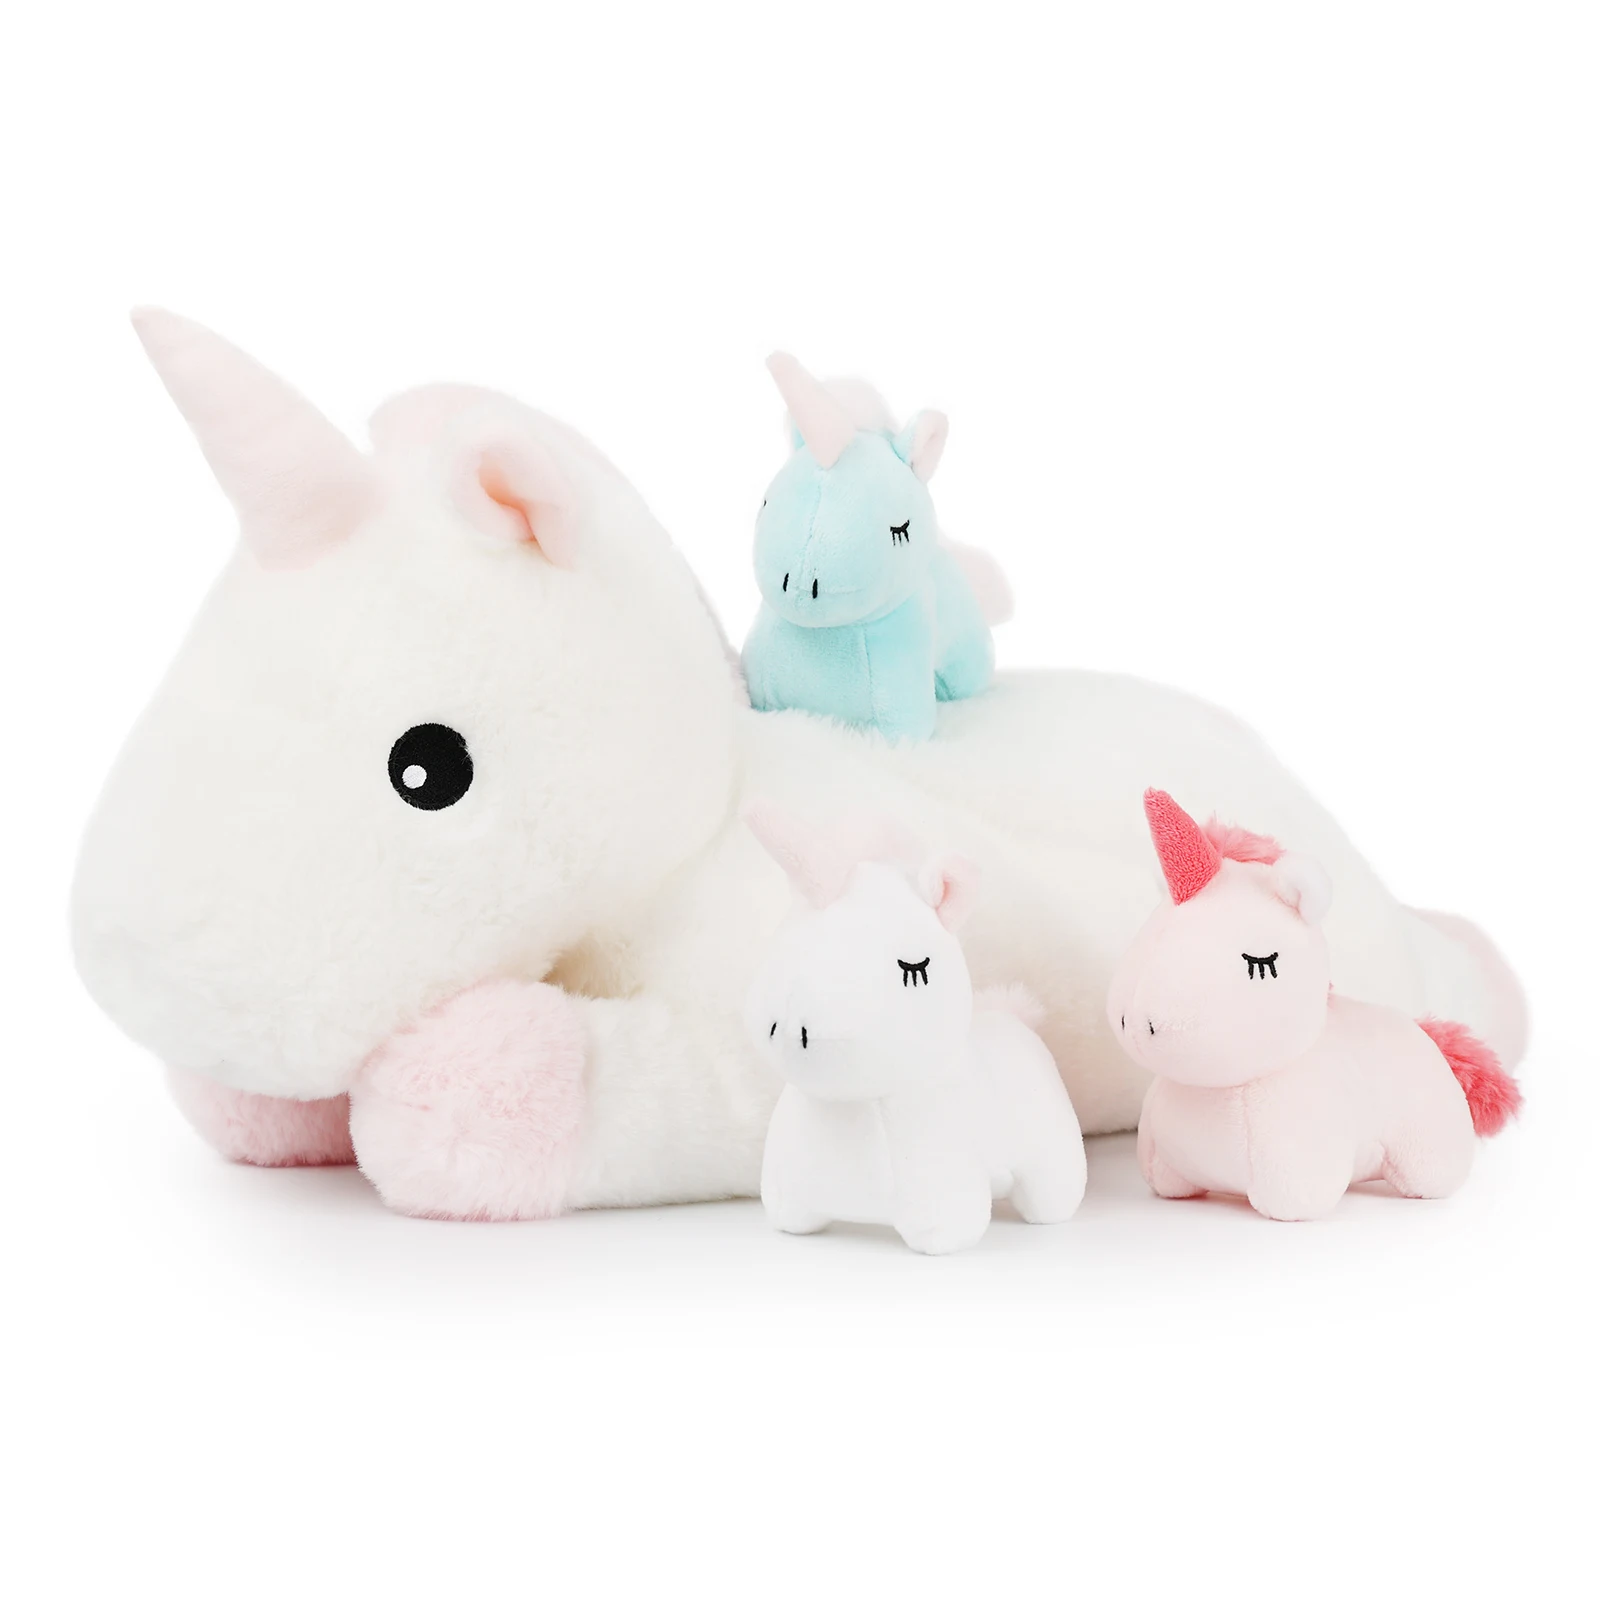 

Mother and Kids Plush Toys Unicorns Stuffed Animals, 4 in 1 Plush Mommy Unicorn Set with 3 Babies Unicorns, Set of 4, 18 inches